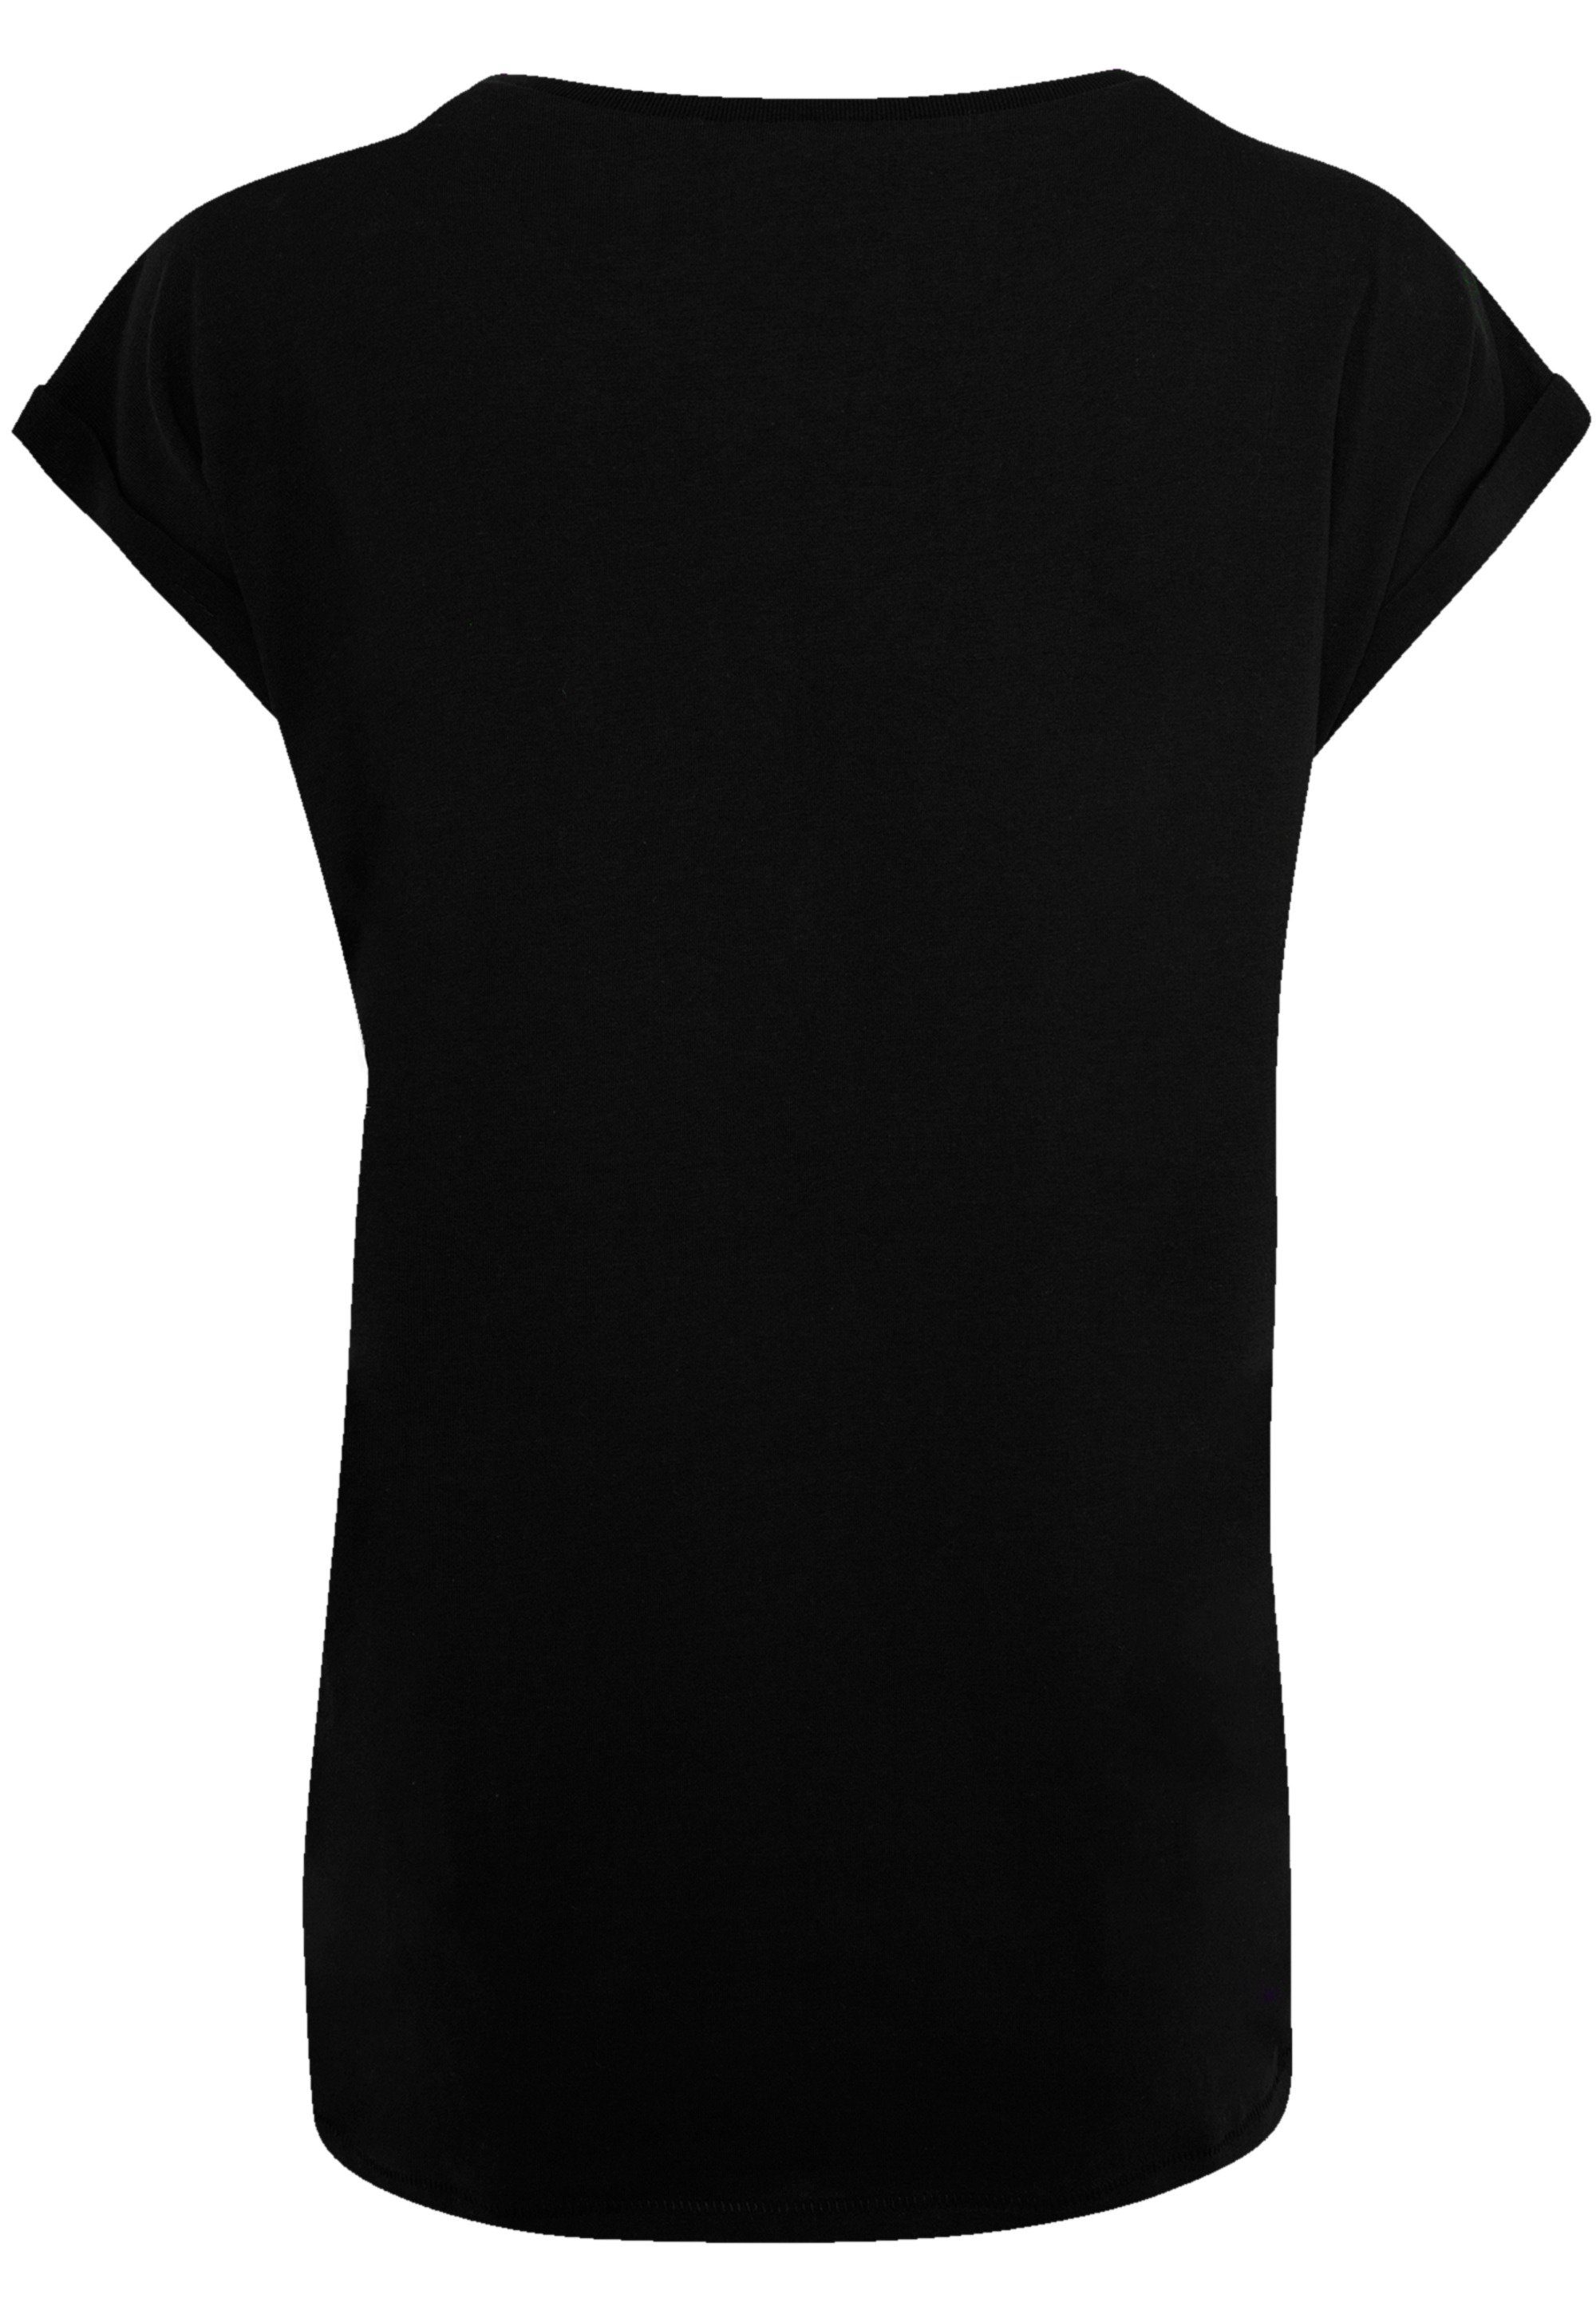 F4NT4STIC T-Shirt Kiss Hard Rock Offiziell Band Qualität, T-Shirt Kiss Premium lizenziertes Demon